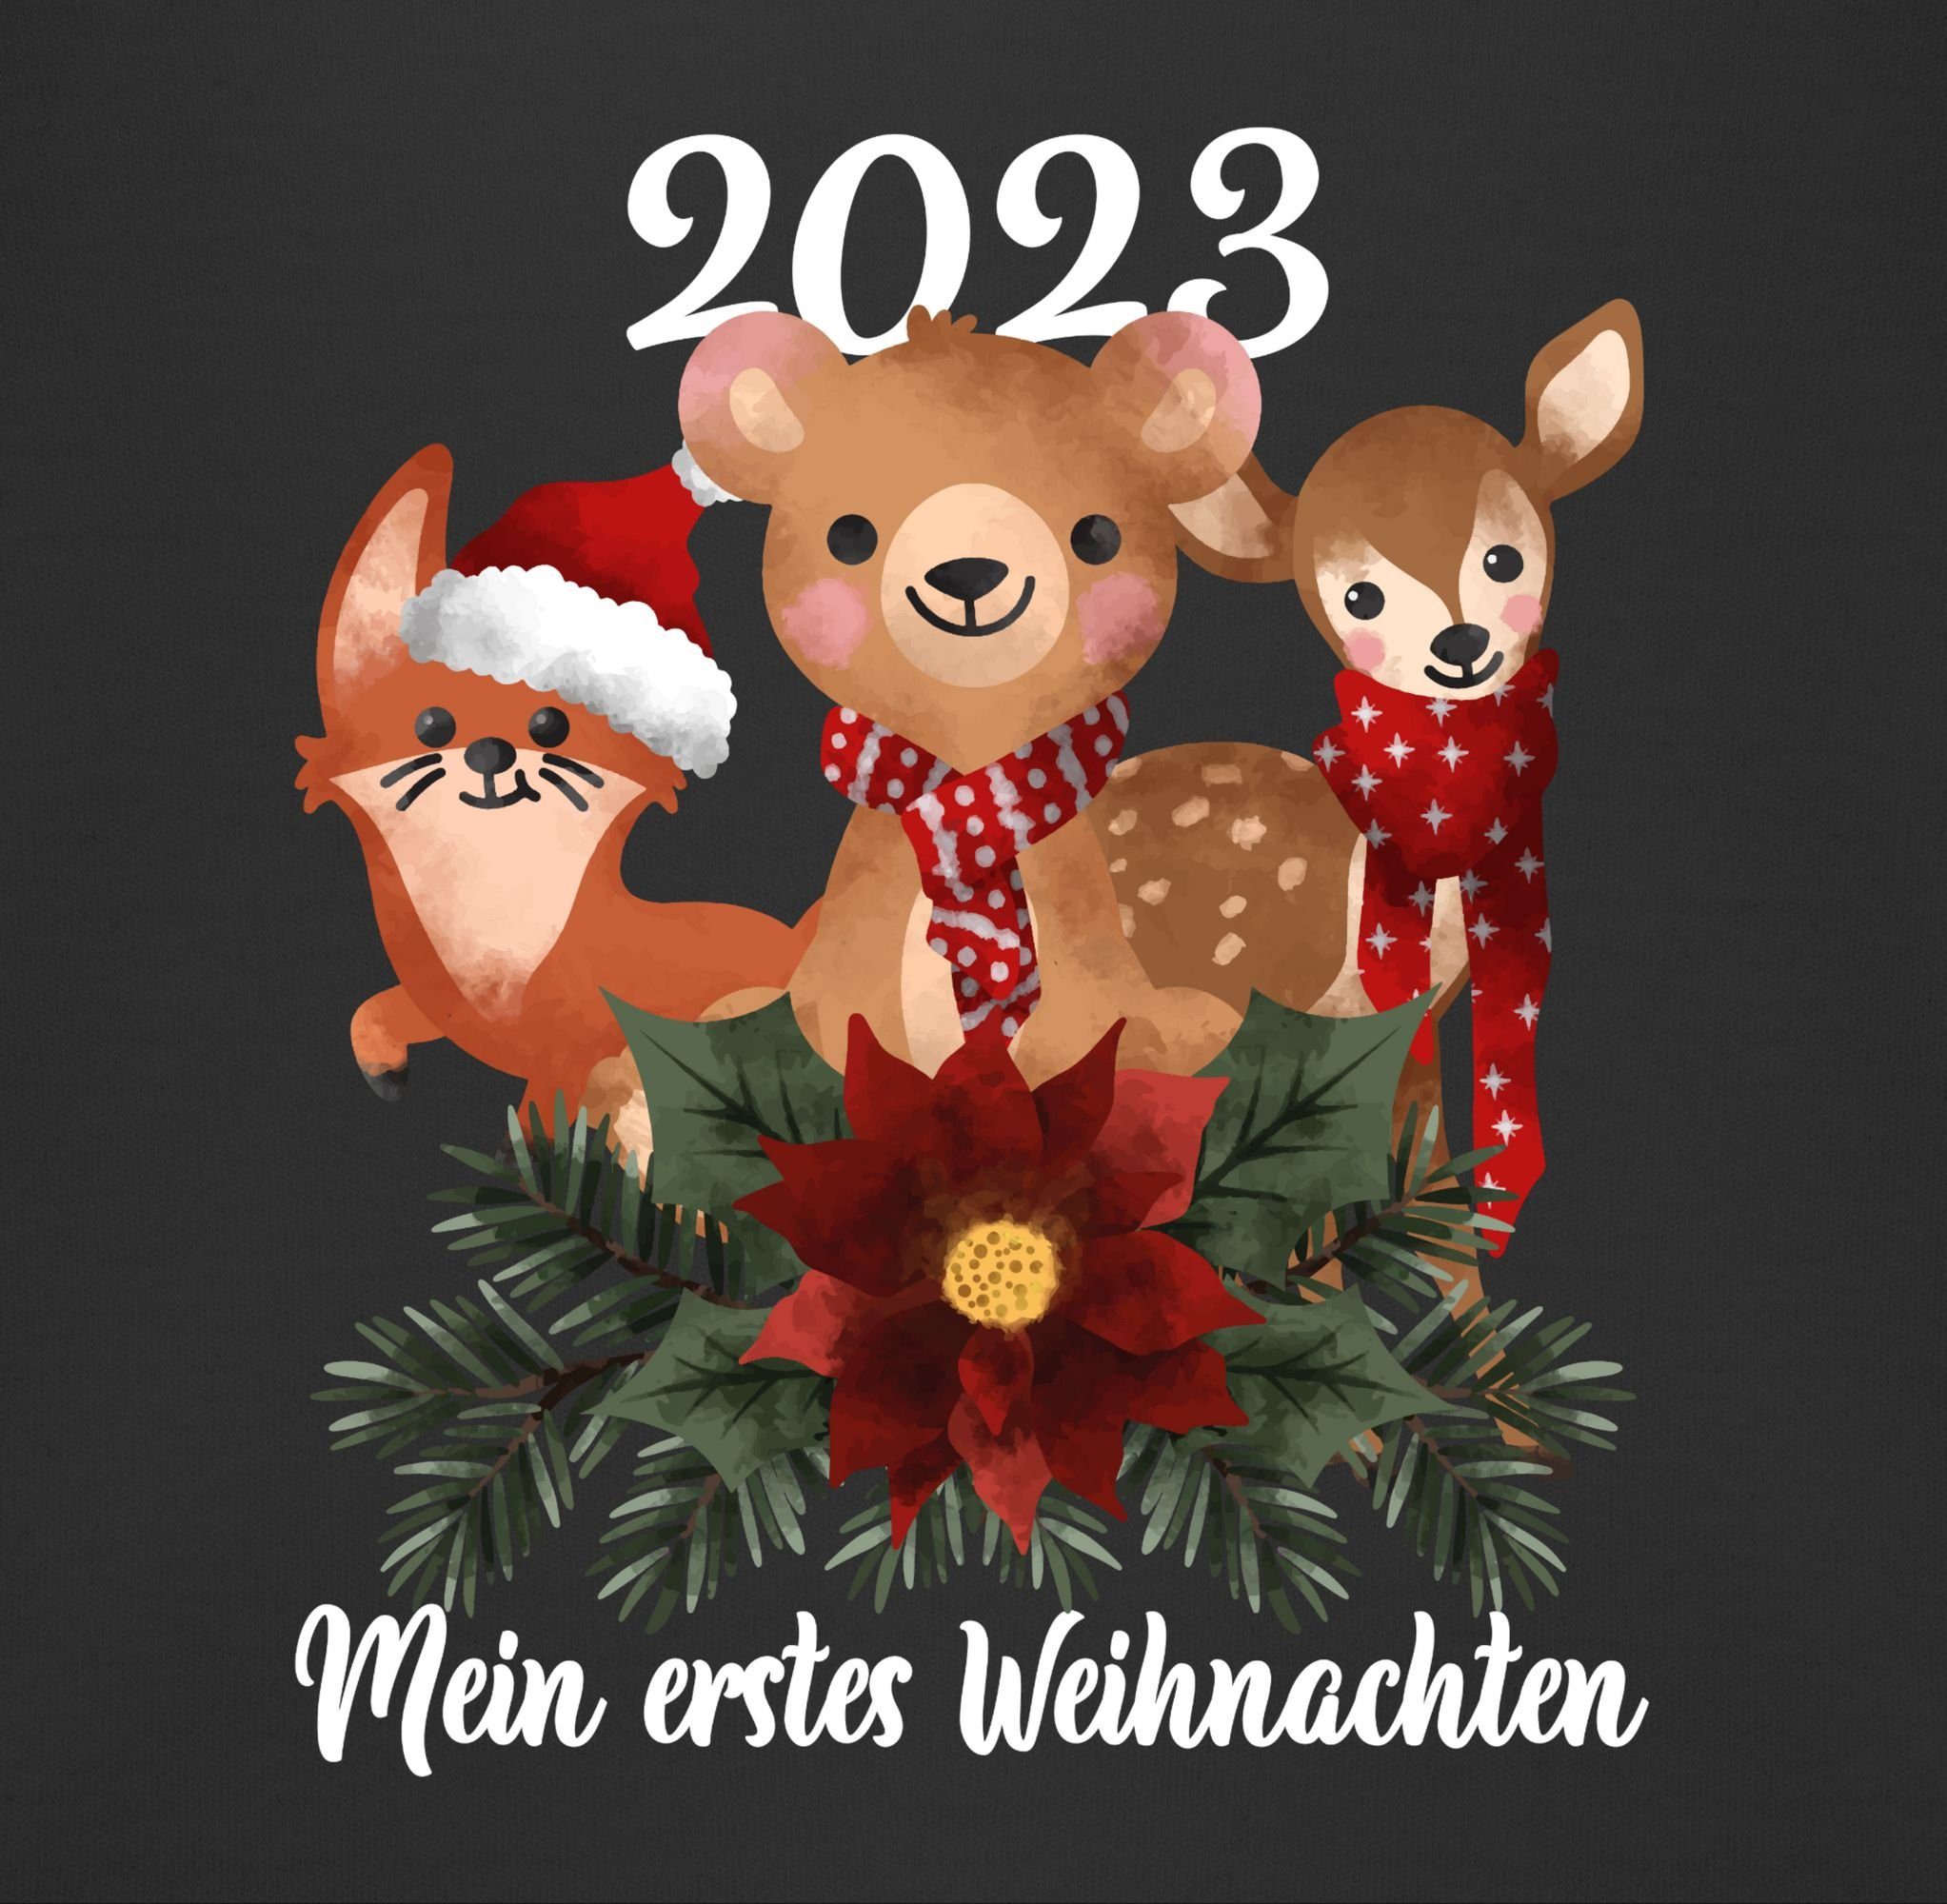 3 Mein Lätzchen Weihnachten Tieren mit 2023 Weihnachten Shirtracer süßen erstes Kleidung Schwarz - Baby weiß,